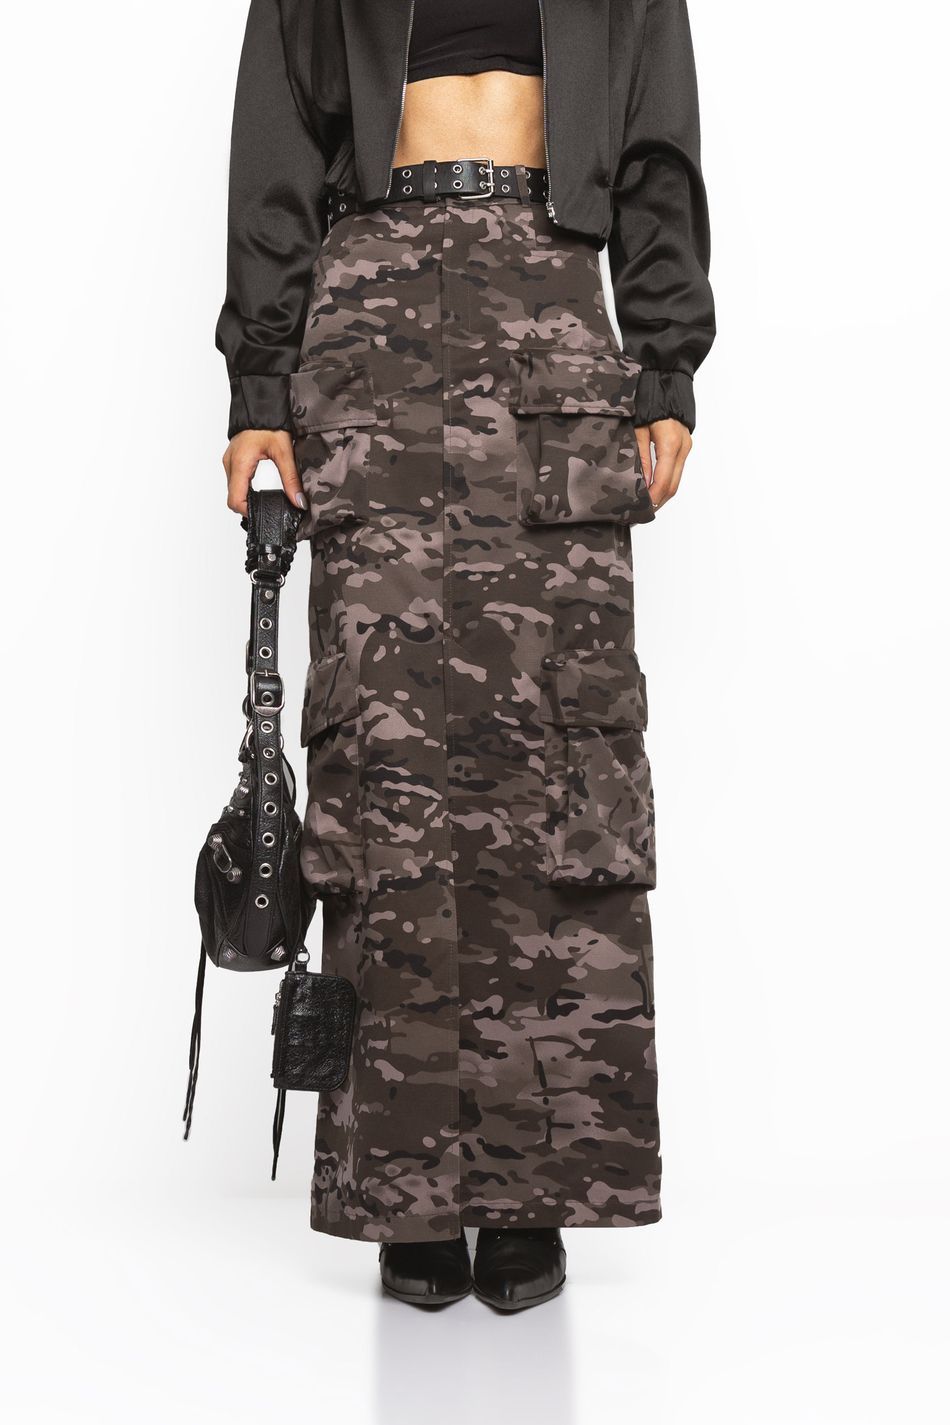 Купить юбка карго принт милитари - ZM2322 в интернет-магазине YOU WANNA